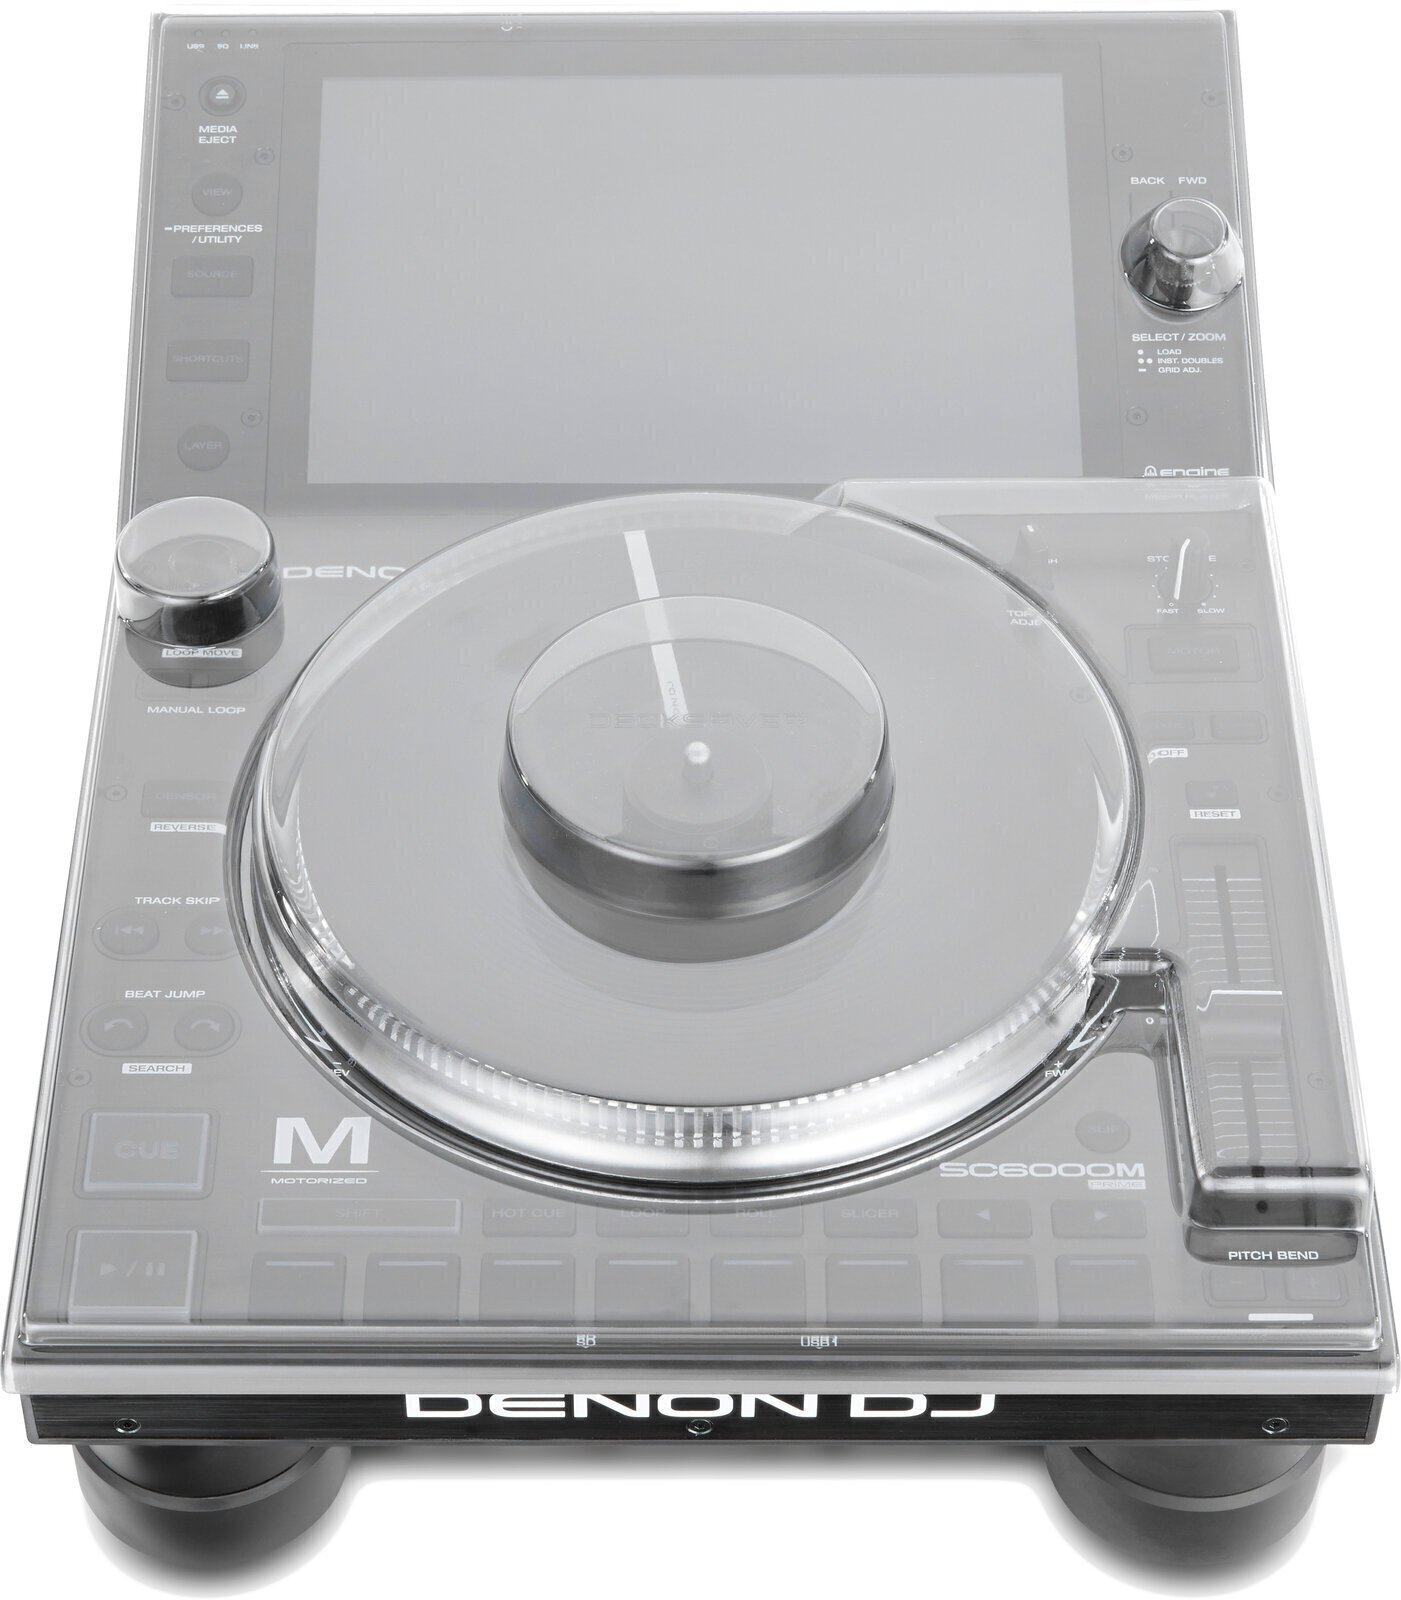 Stolný DJ prehrávač Denon SC6000M Prime Cover SET